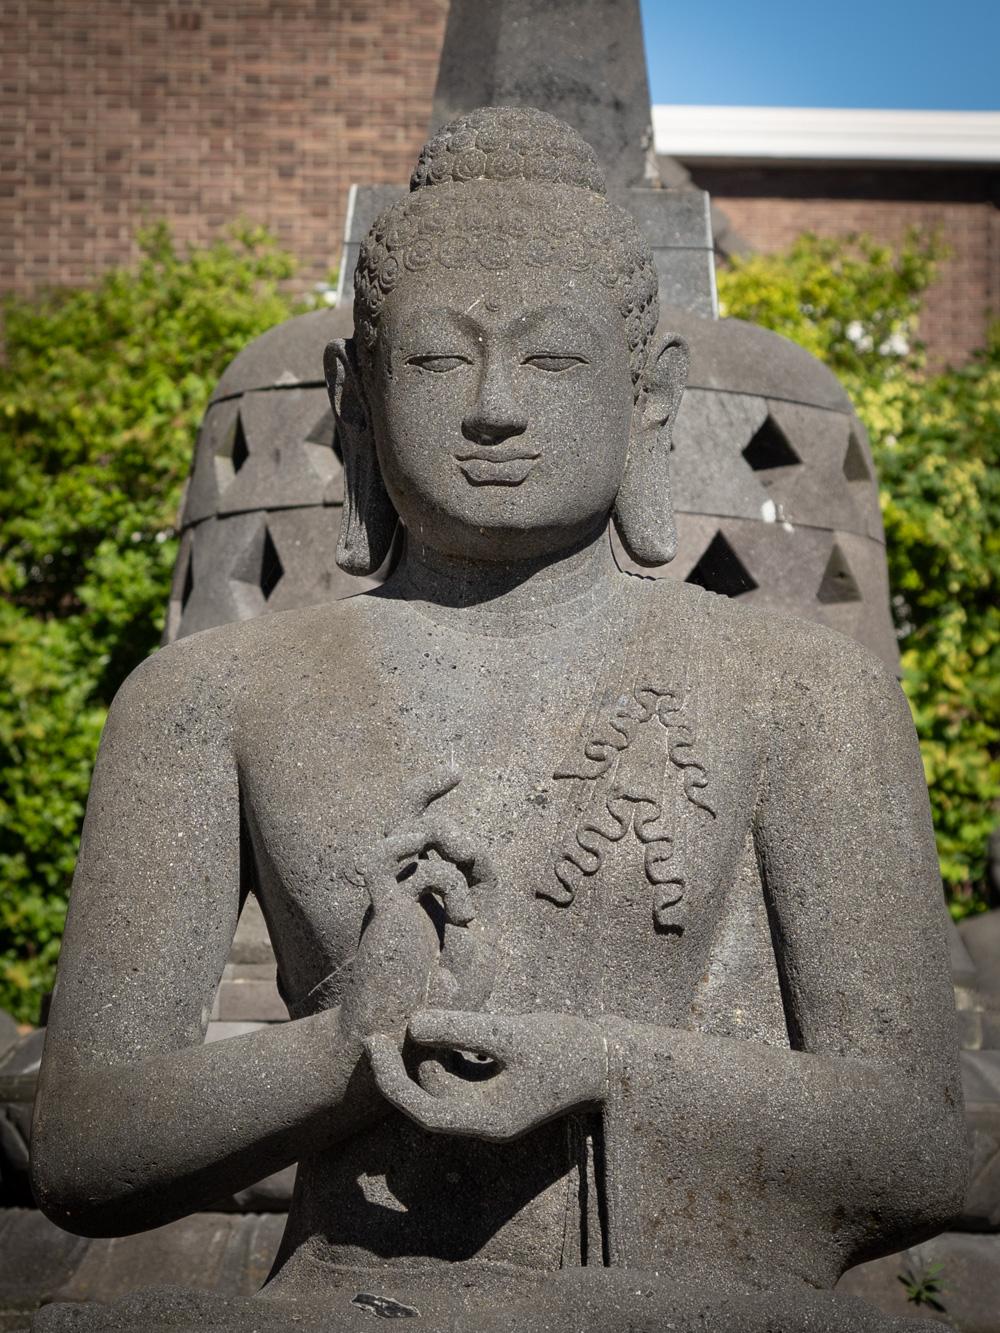 Große Buddha-Statue aus Lavastein
MATERIAL : Lavastein
117 cm hoch
93 cm breit und 67 cm tief
Geschätztes Gewicht: +/- 350 kg
Dharmachakra Mudra
Neu handgeschnitzt aus einem einzigen Lavasteinblock
Kann weltweit verschickt werden
Mit Ursprung in